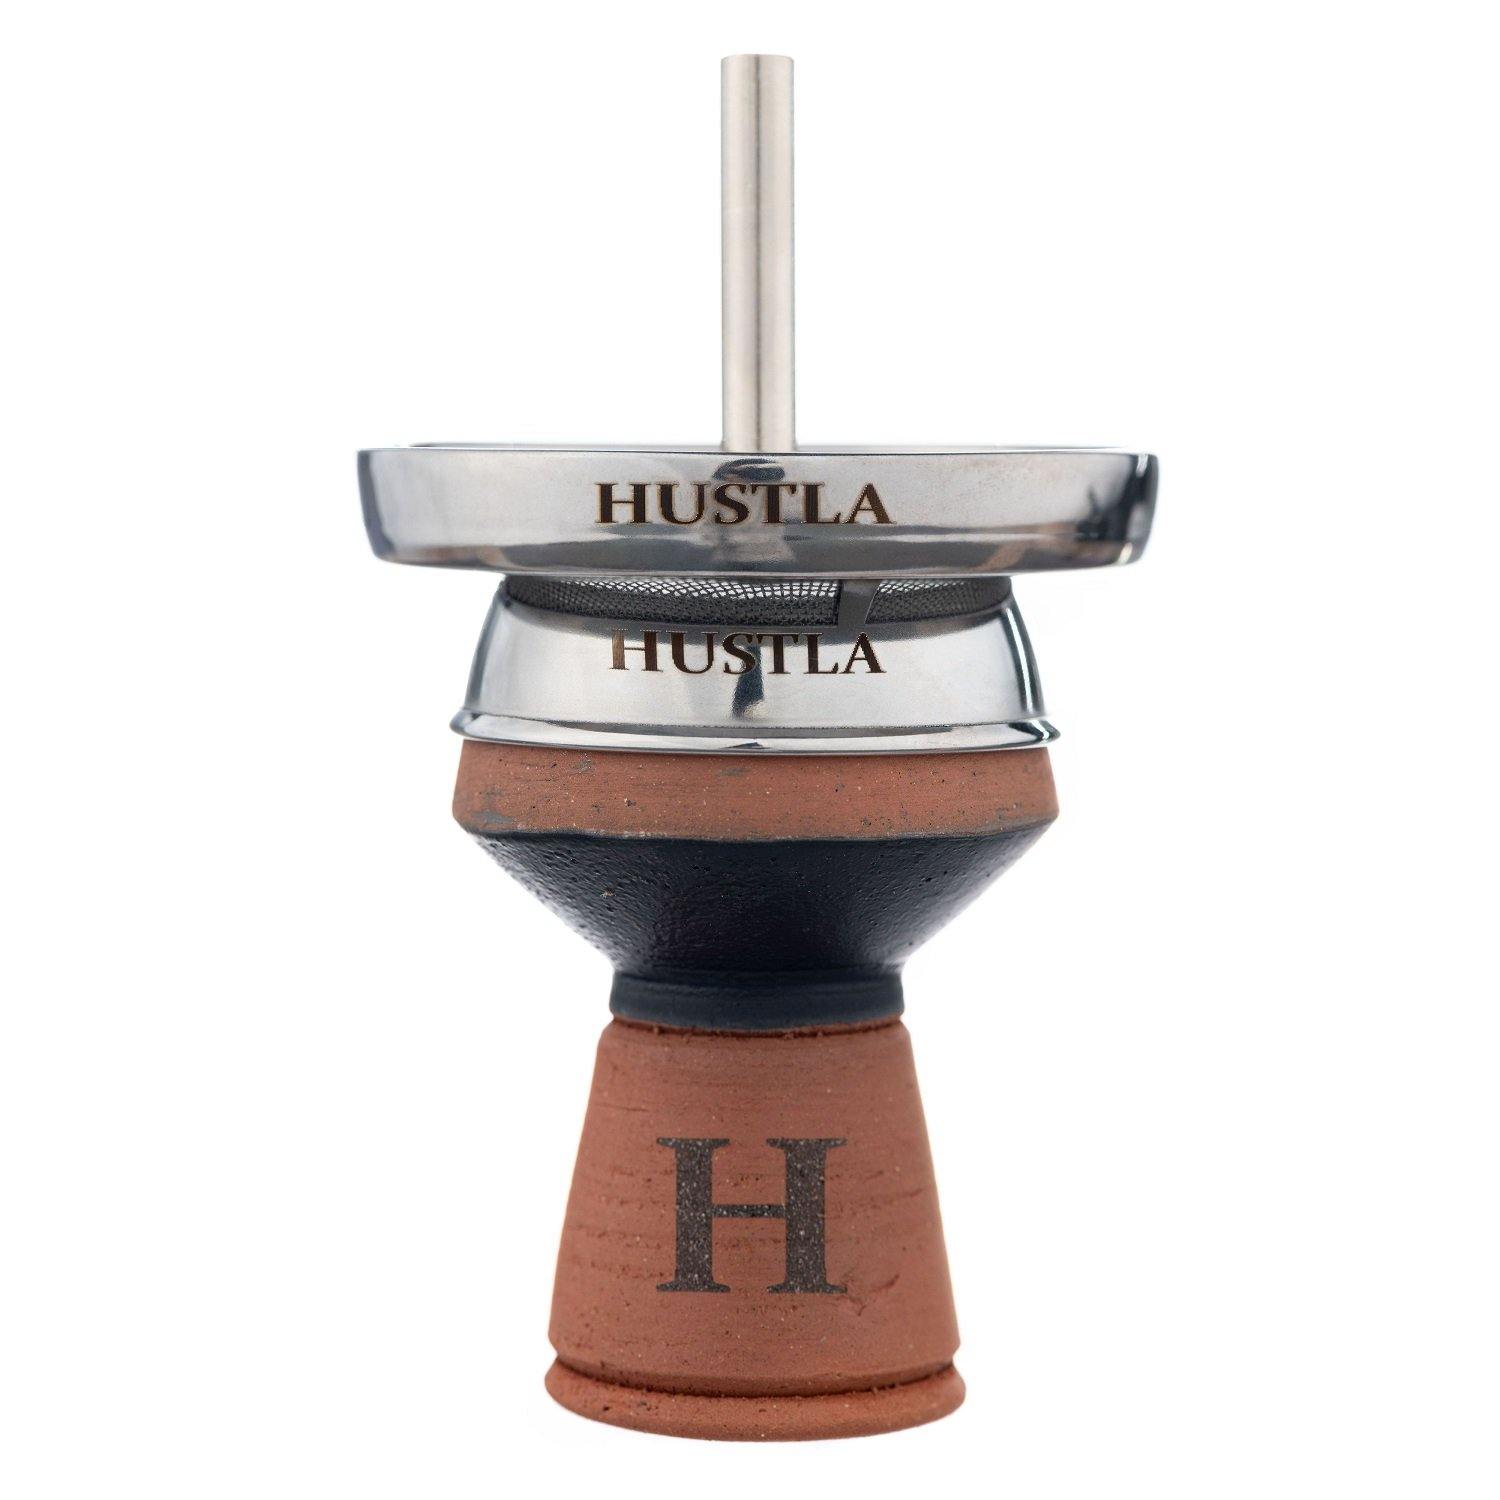 Hustla 5 Hole Chimney Bowl Set - shishagear - UK Shisha Hookah Black Friday